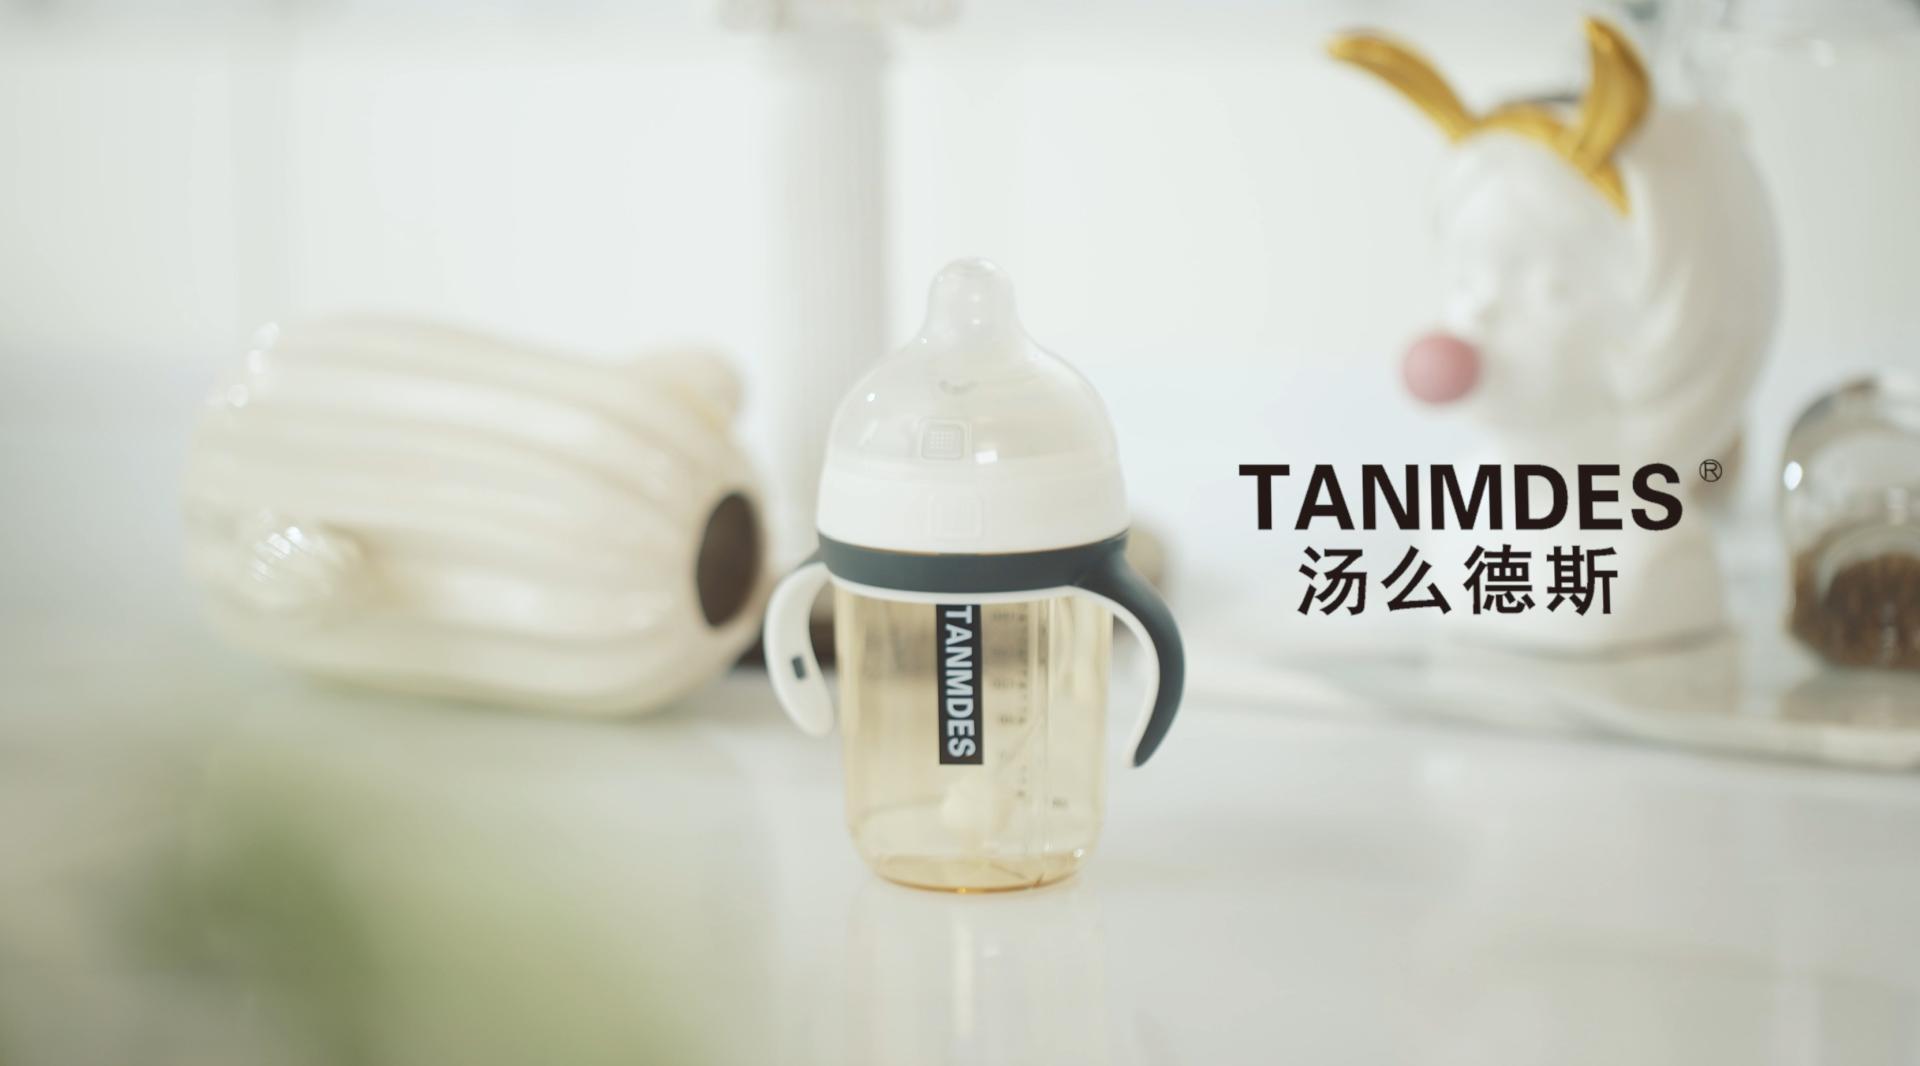 TANMDES 奶瓶产品